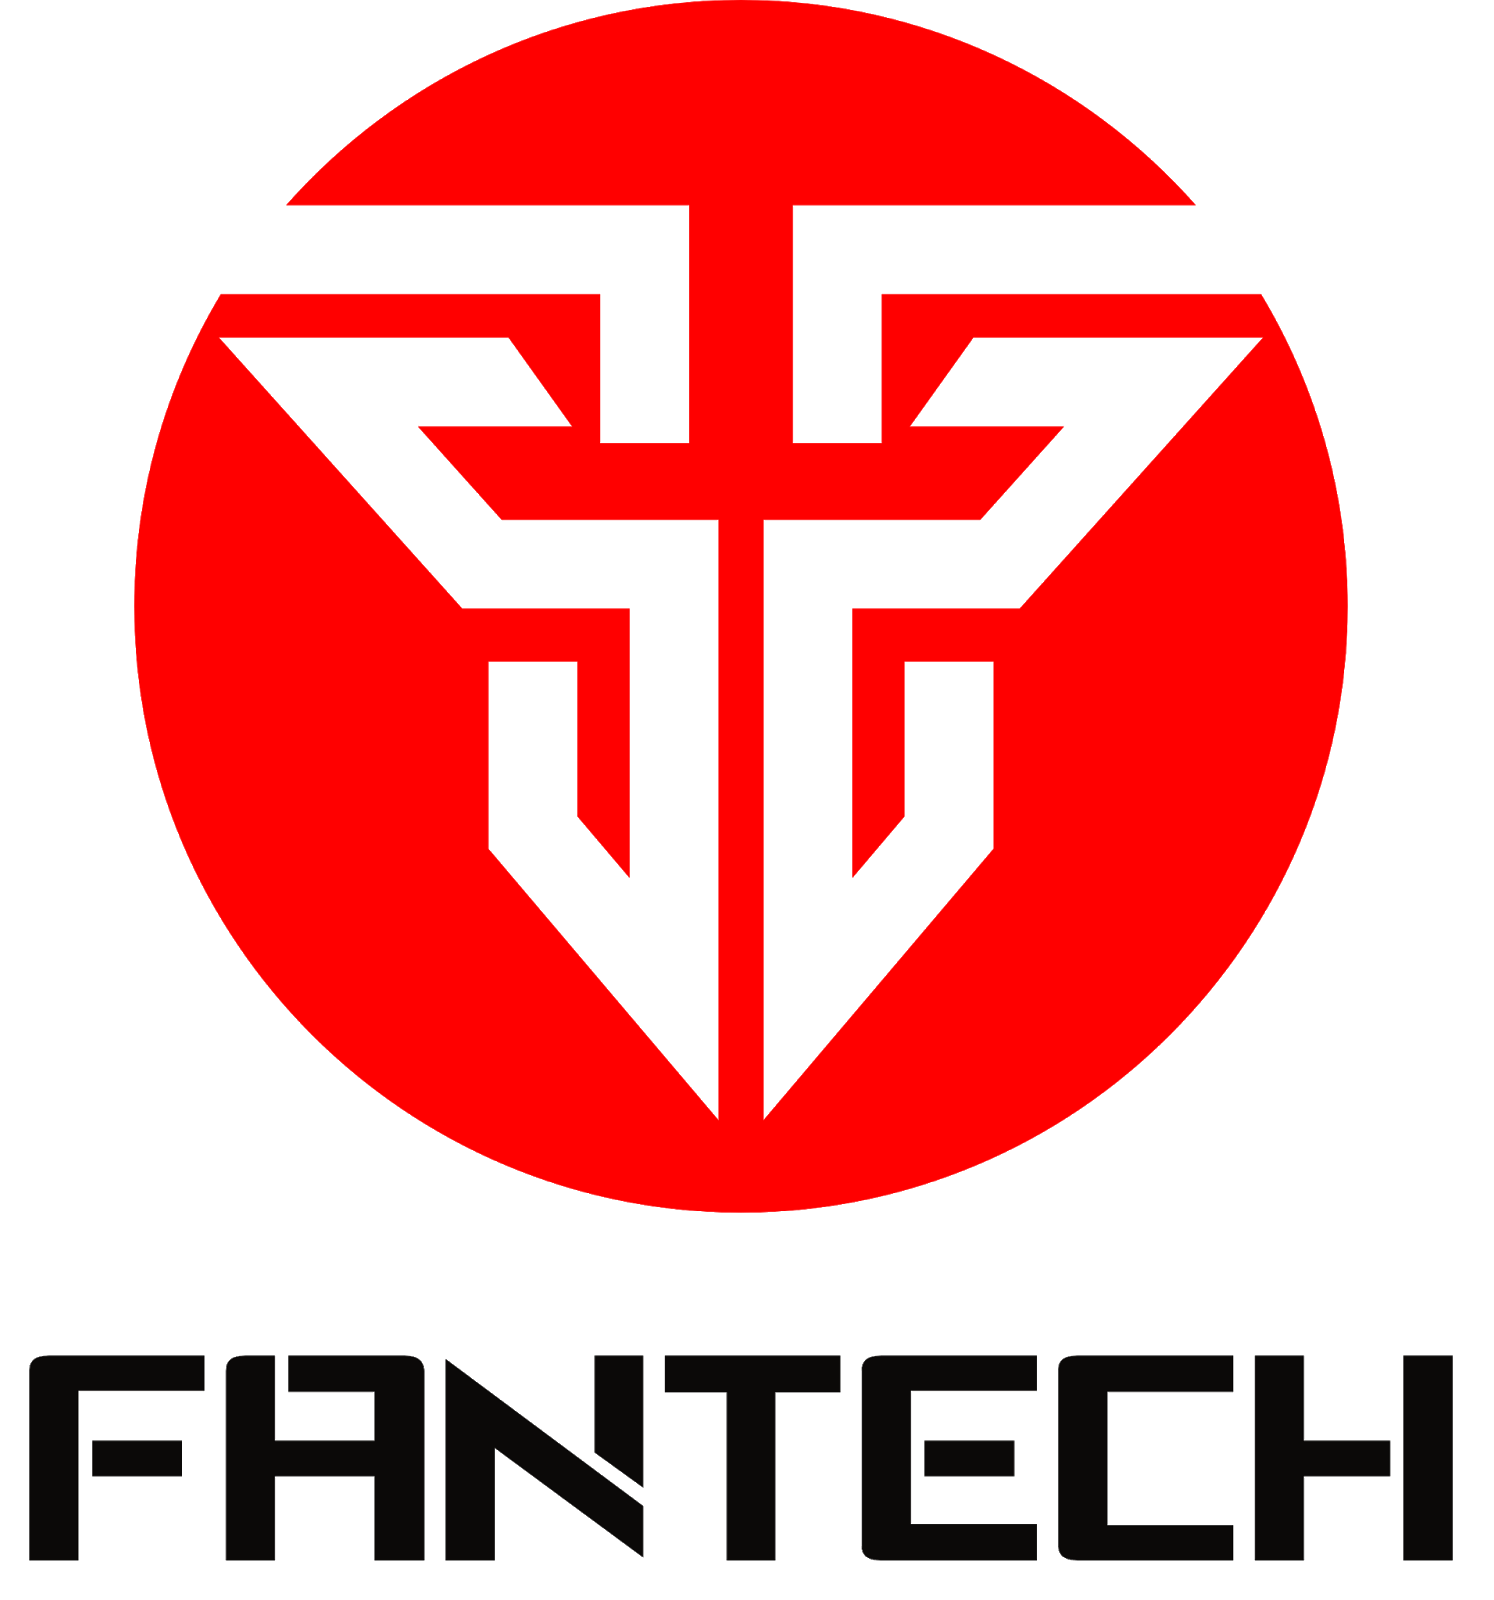 Fantech Logo - Fantech Philippines: Budget Gear Brawl Contender - Tech Gabster